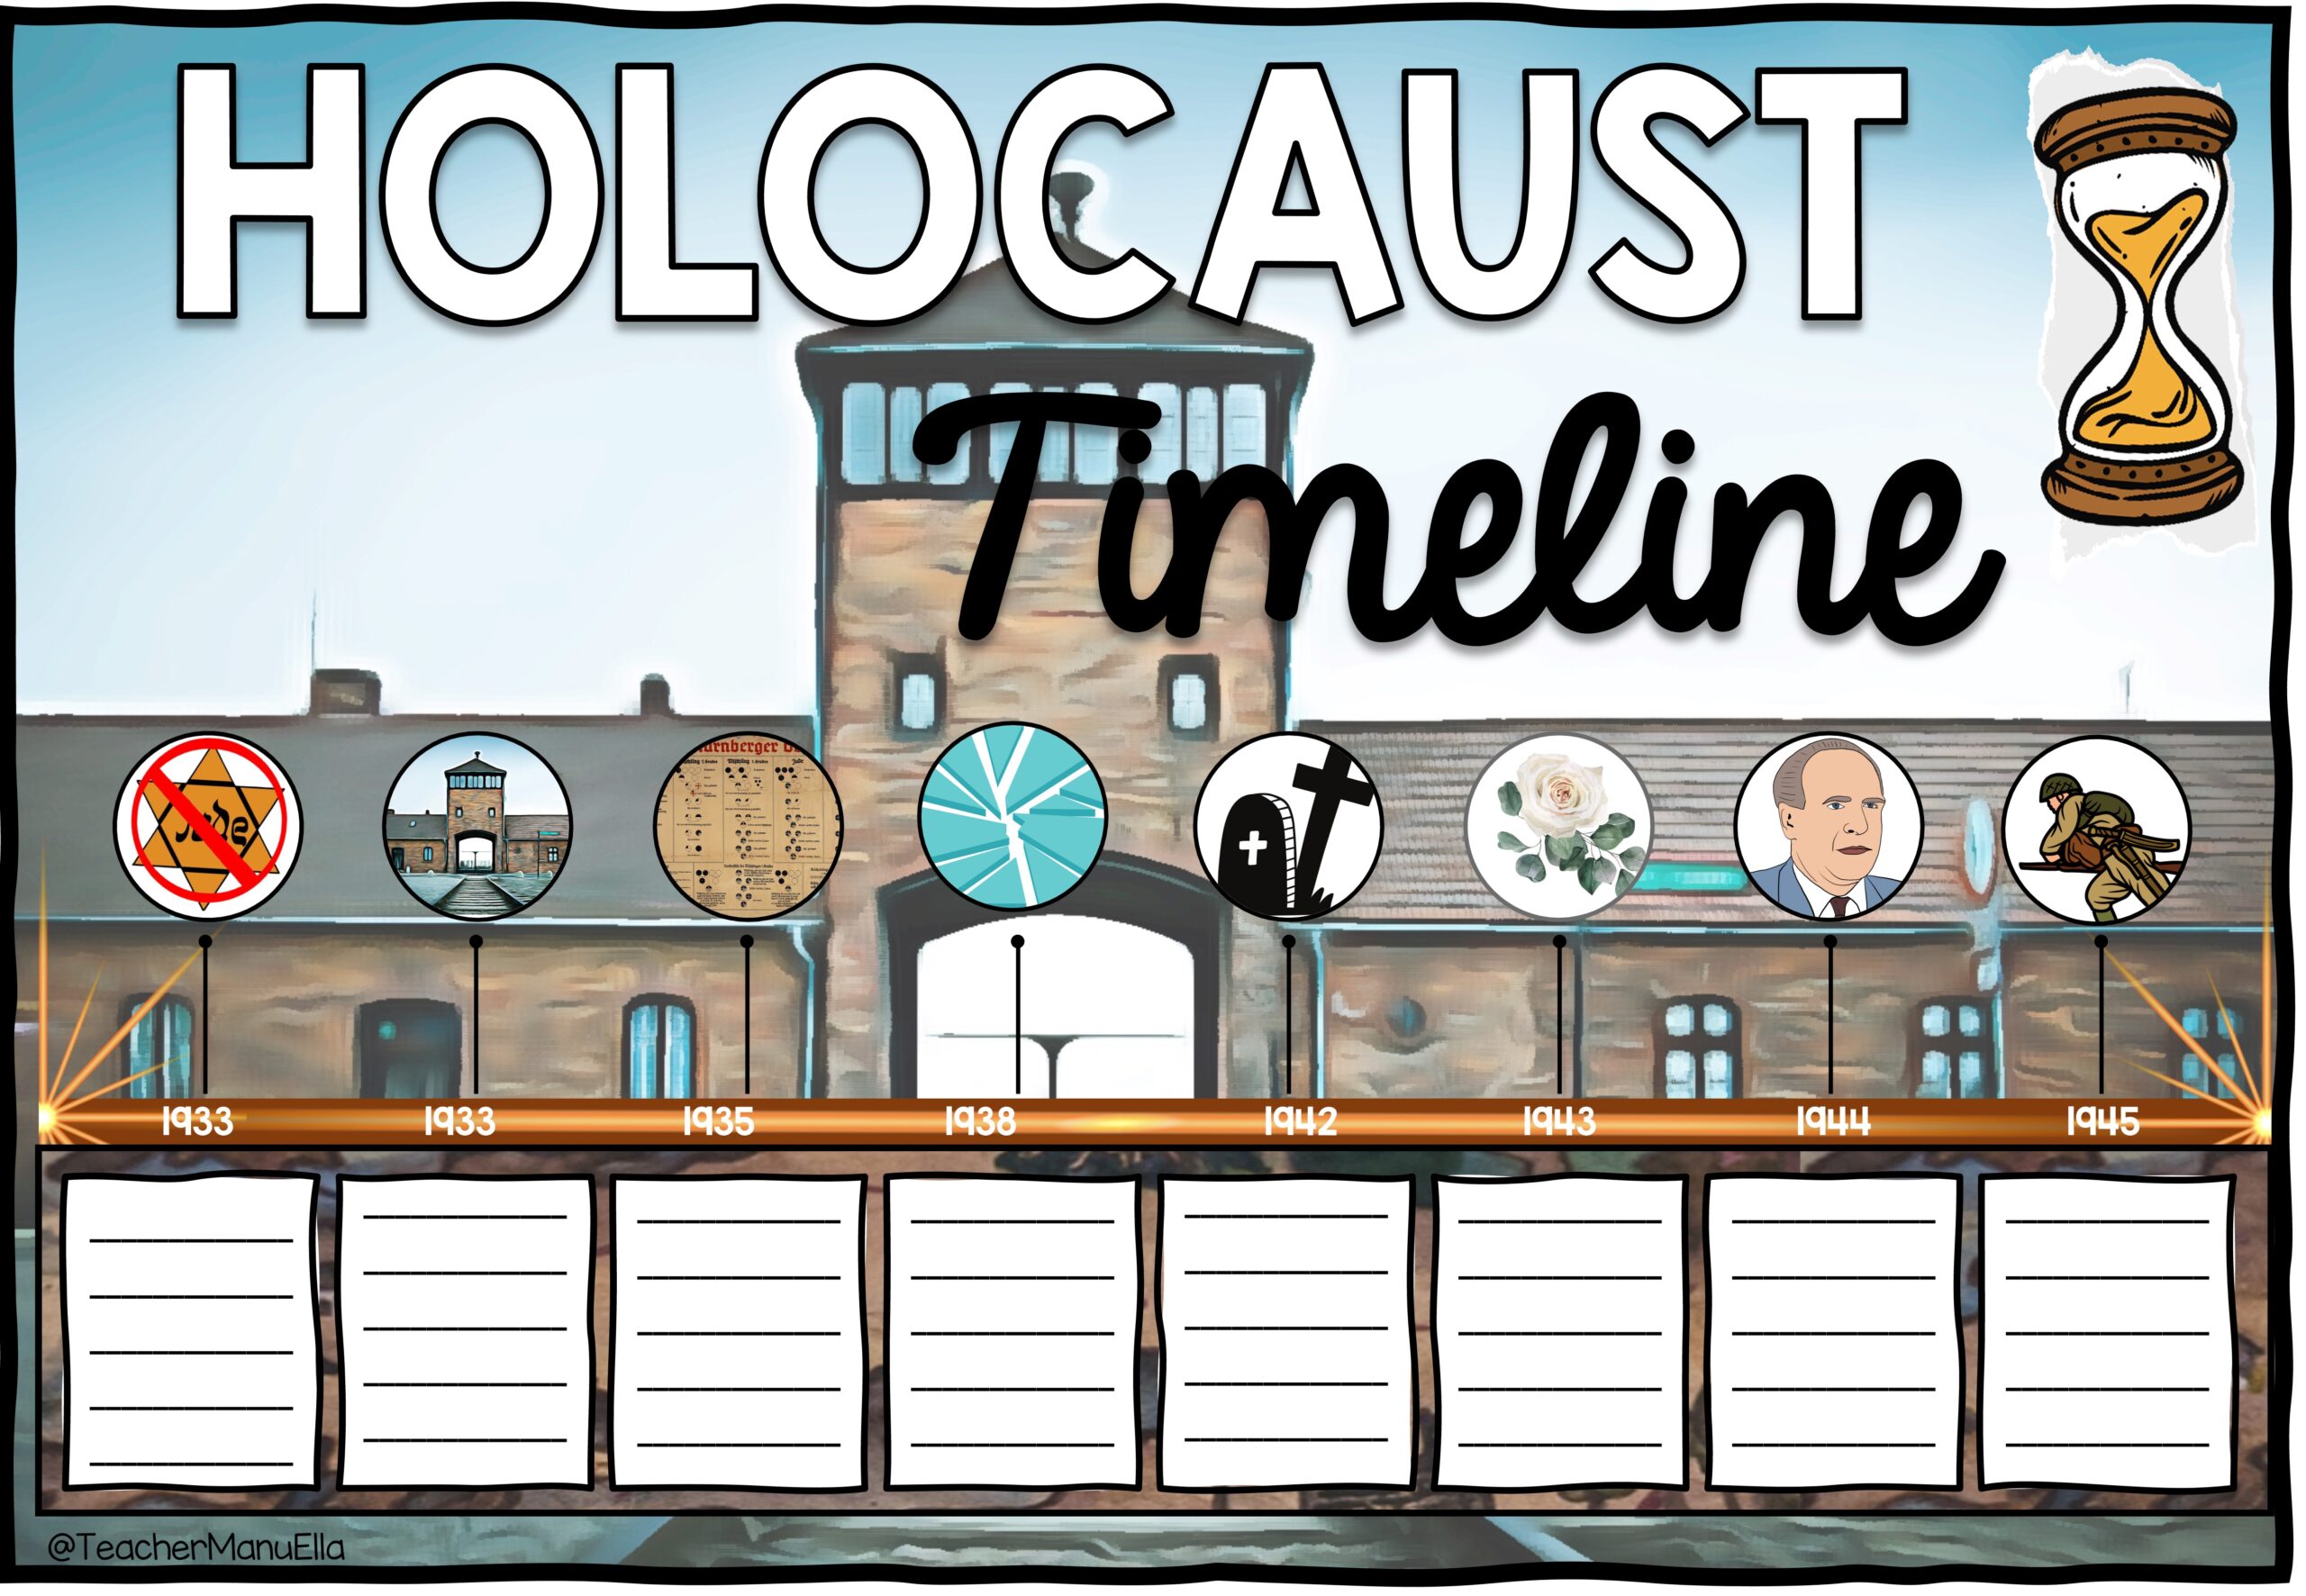 Holocaust Timeline